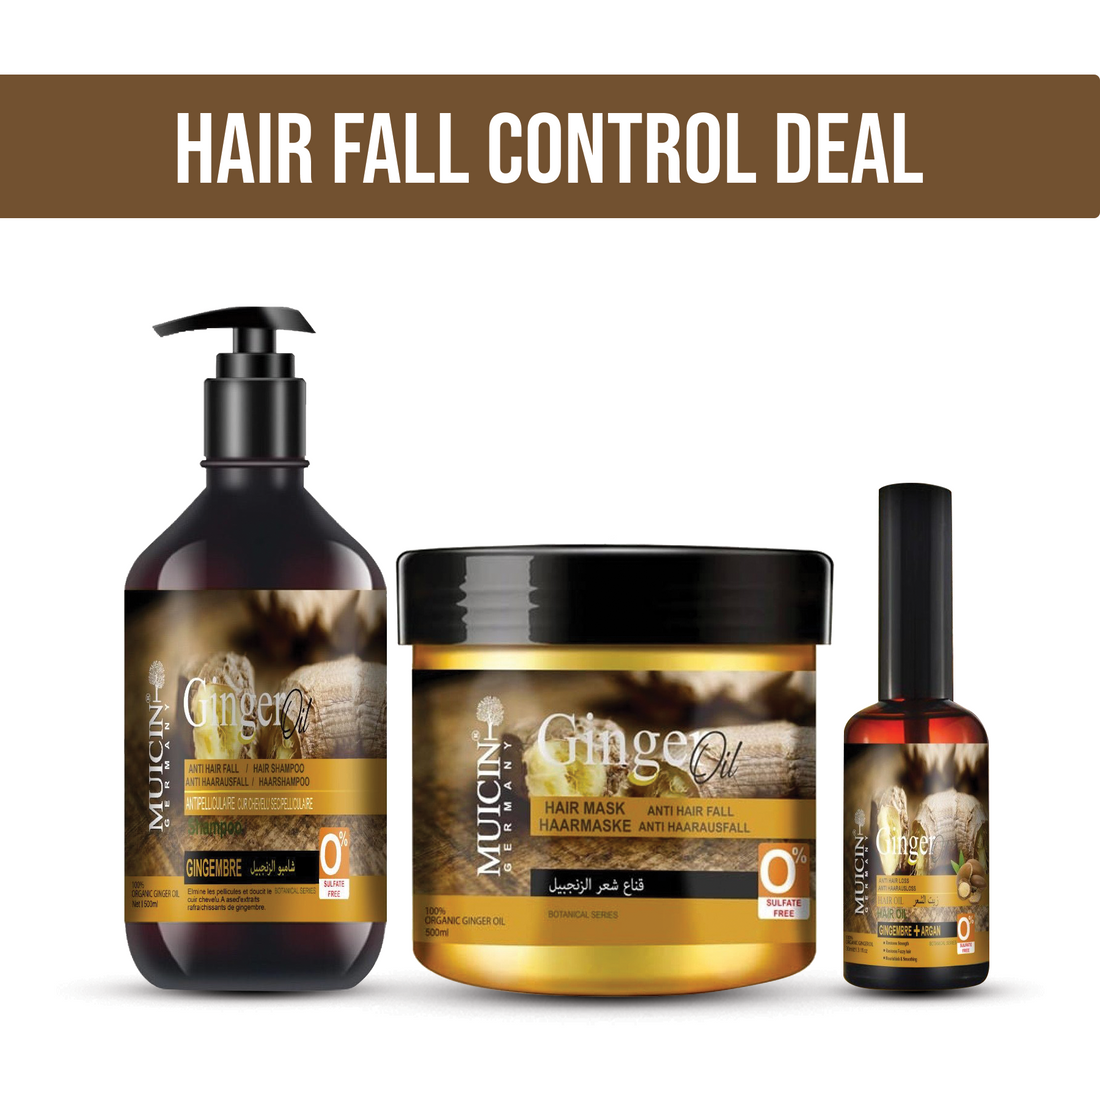 MUICIN - Hair Fall Control Deal